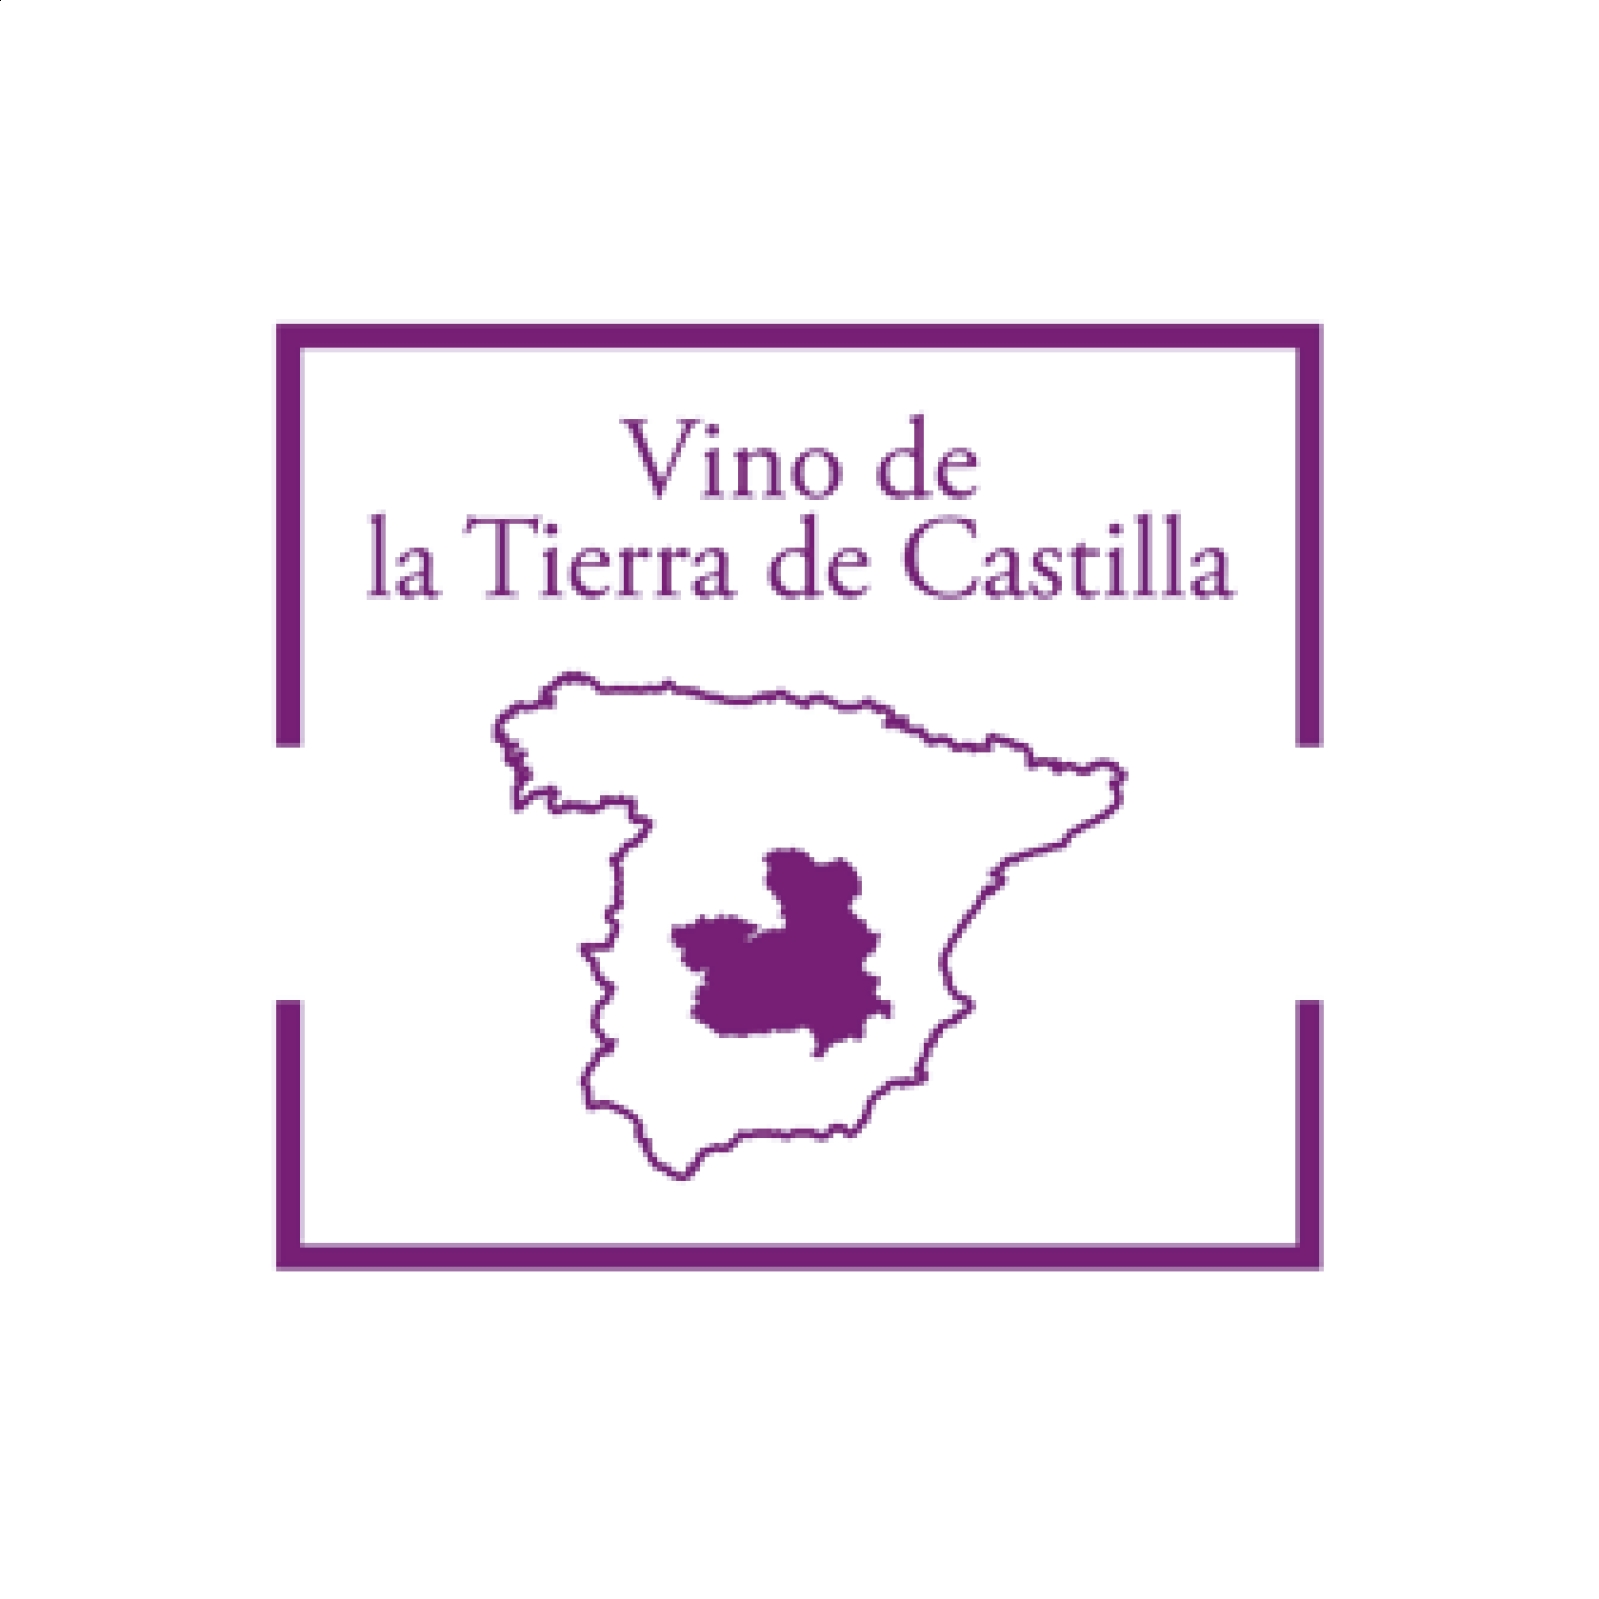 Finca Villalobillos Airén Pie Franco - Vino blanco joven IGP Vino de la Tierra de Castilla 75cl, 6uds